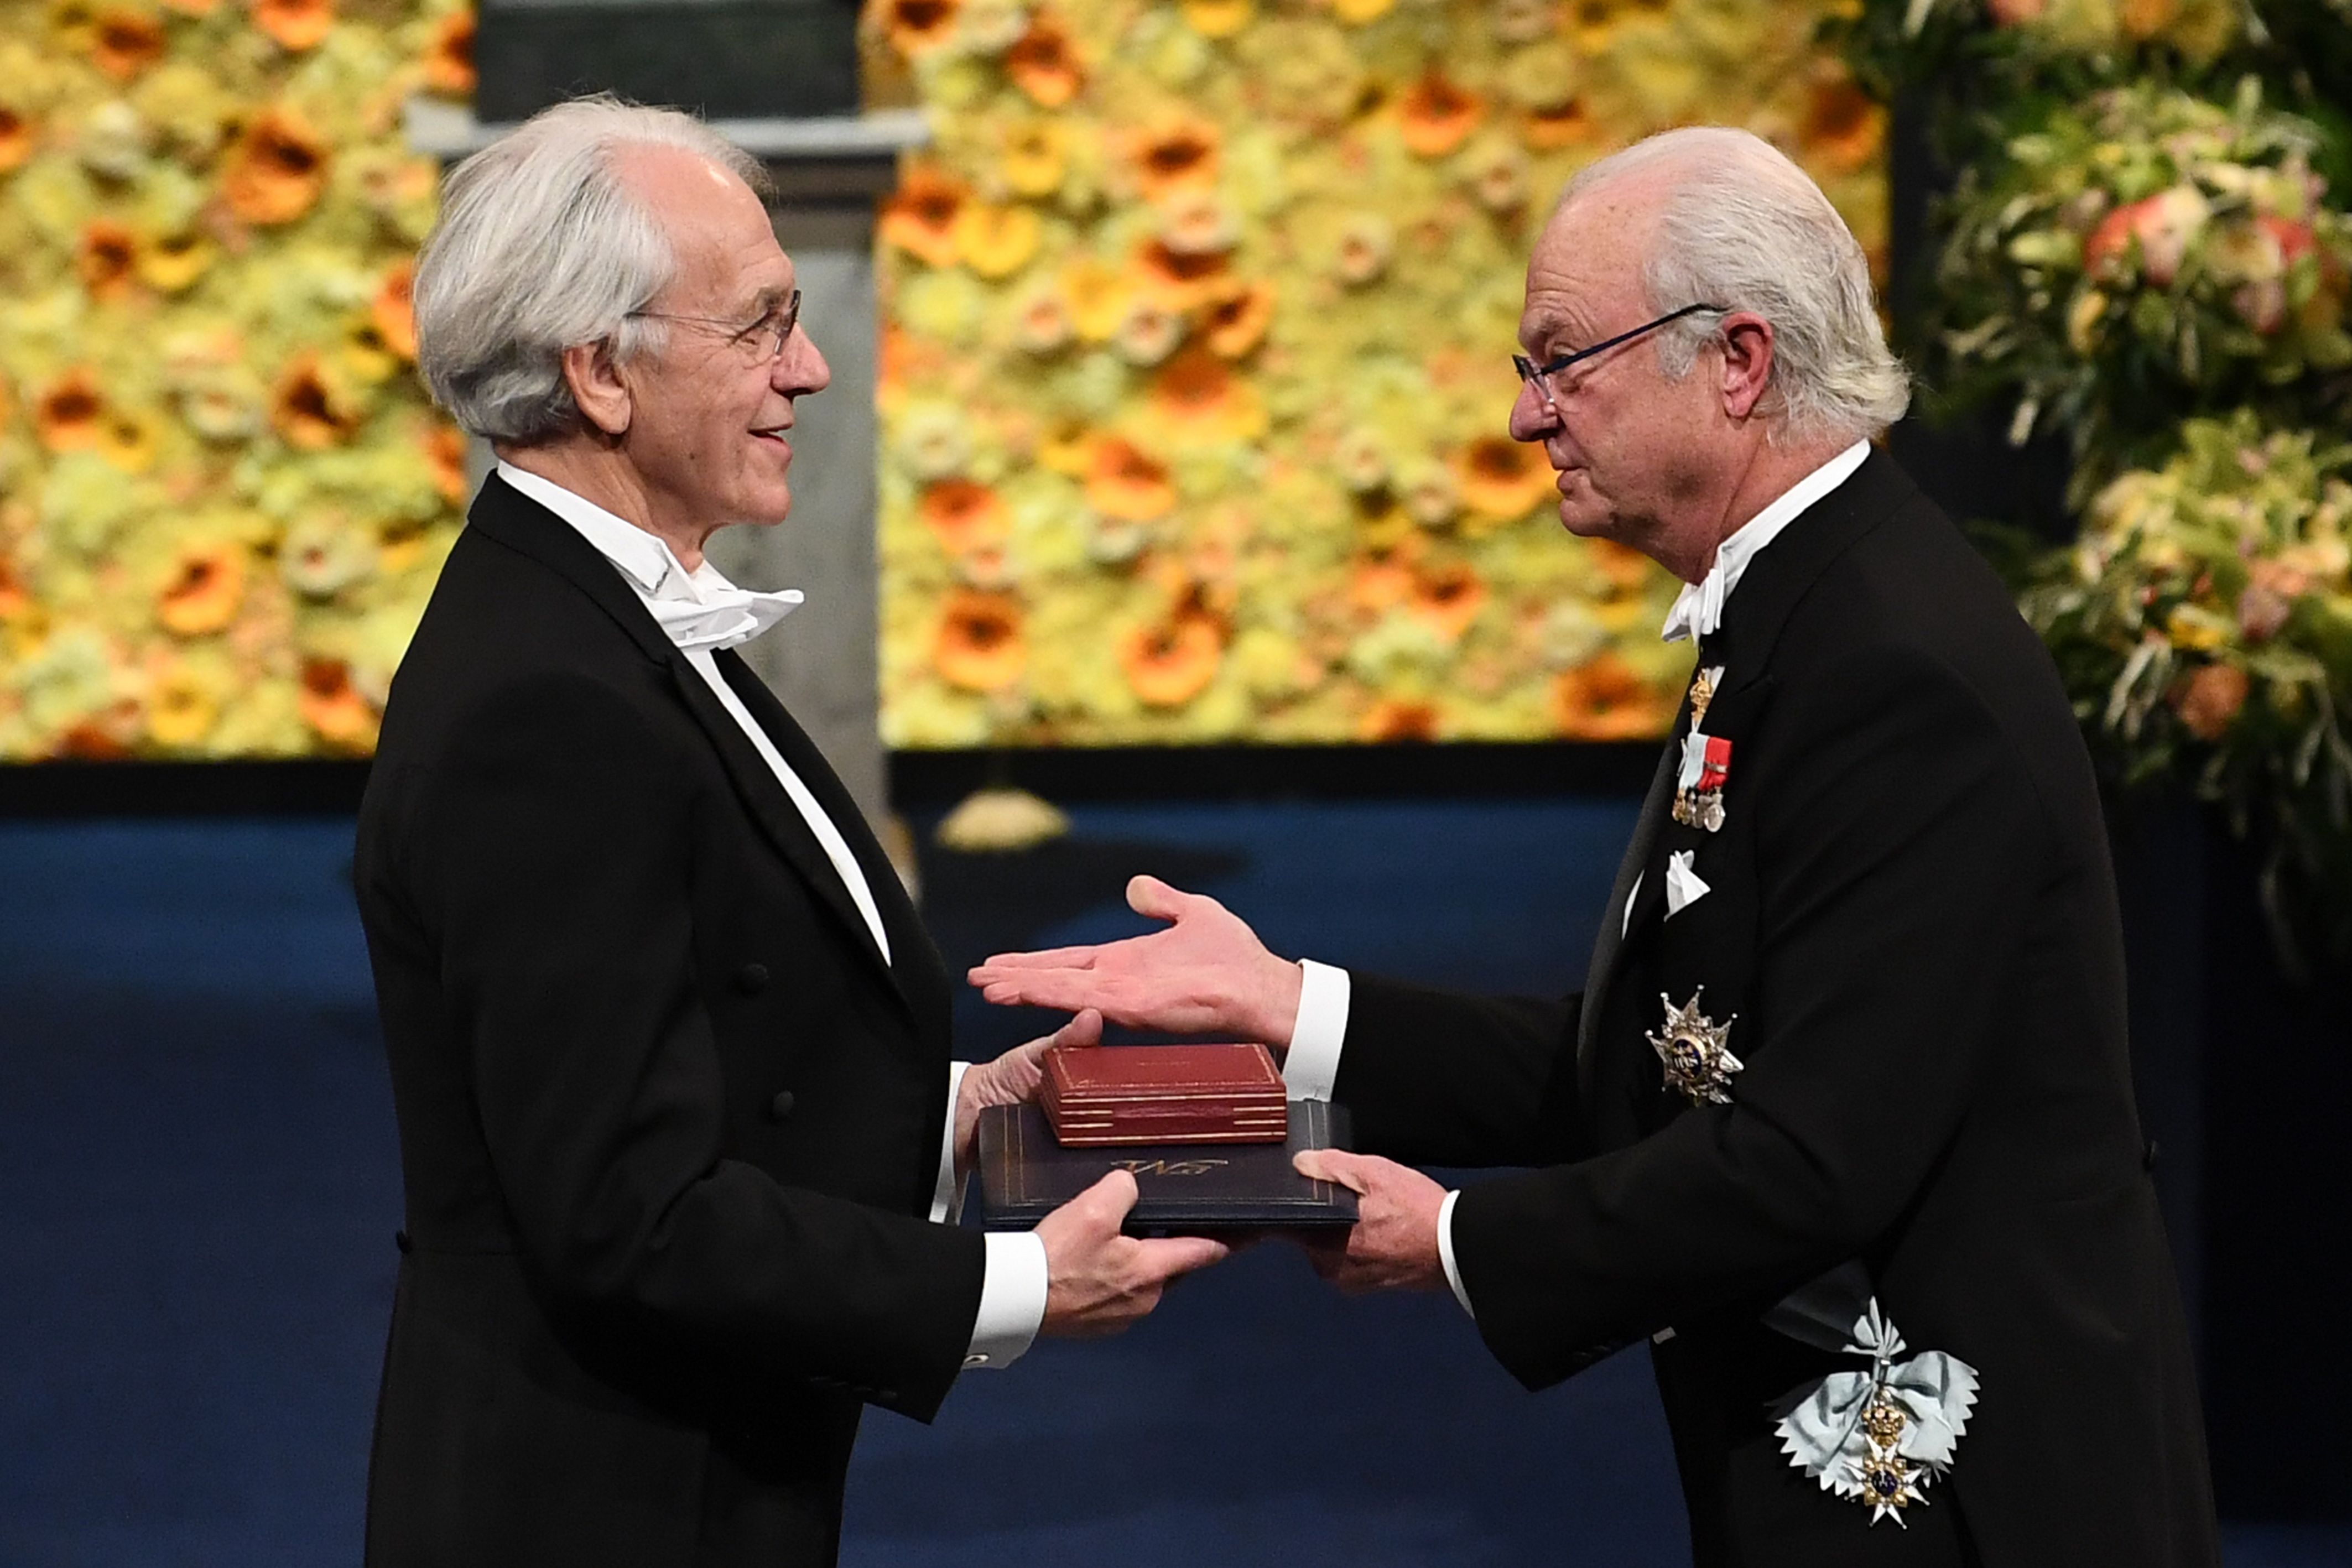 2018年诺贝尔奖颁奖仪式在斯德哥尔摩举行